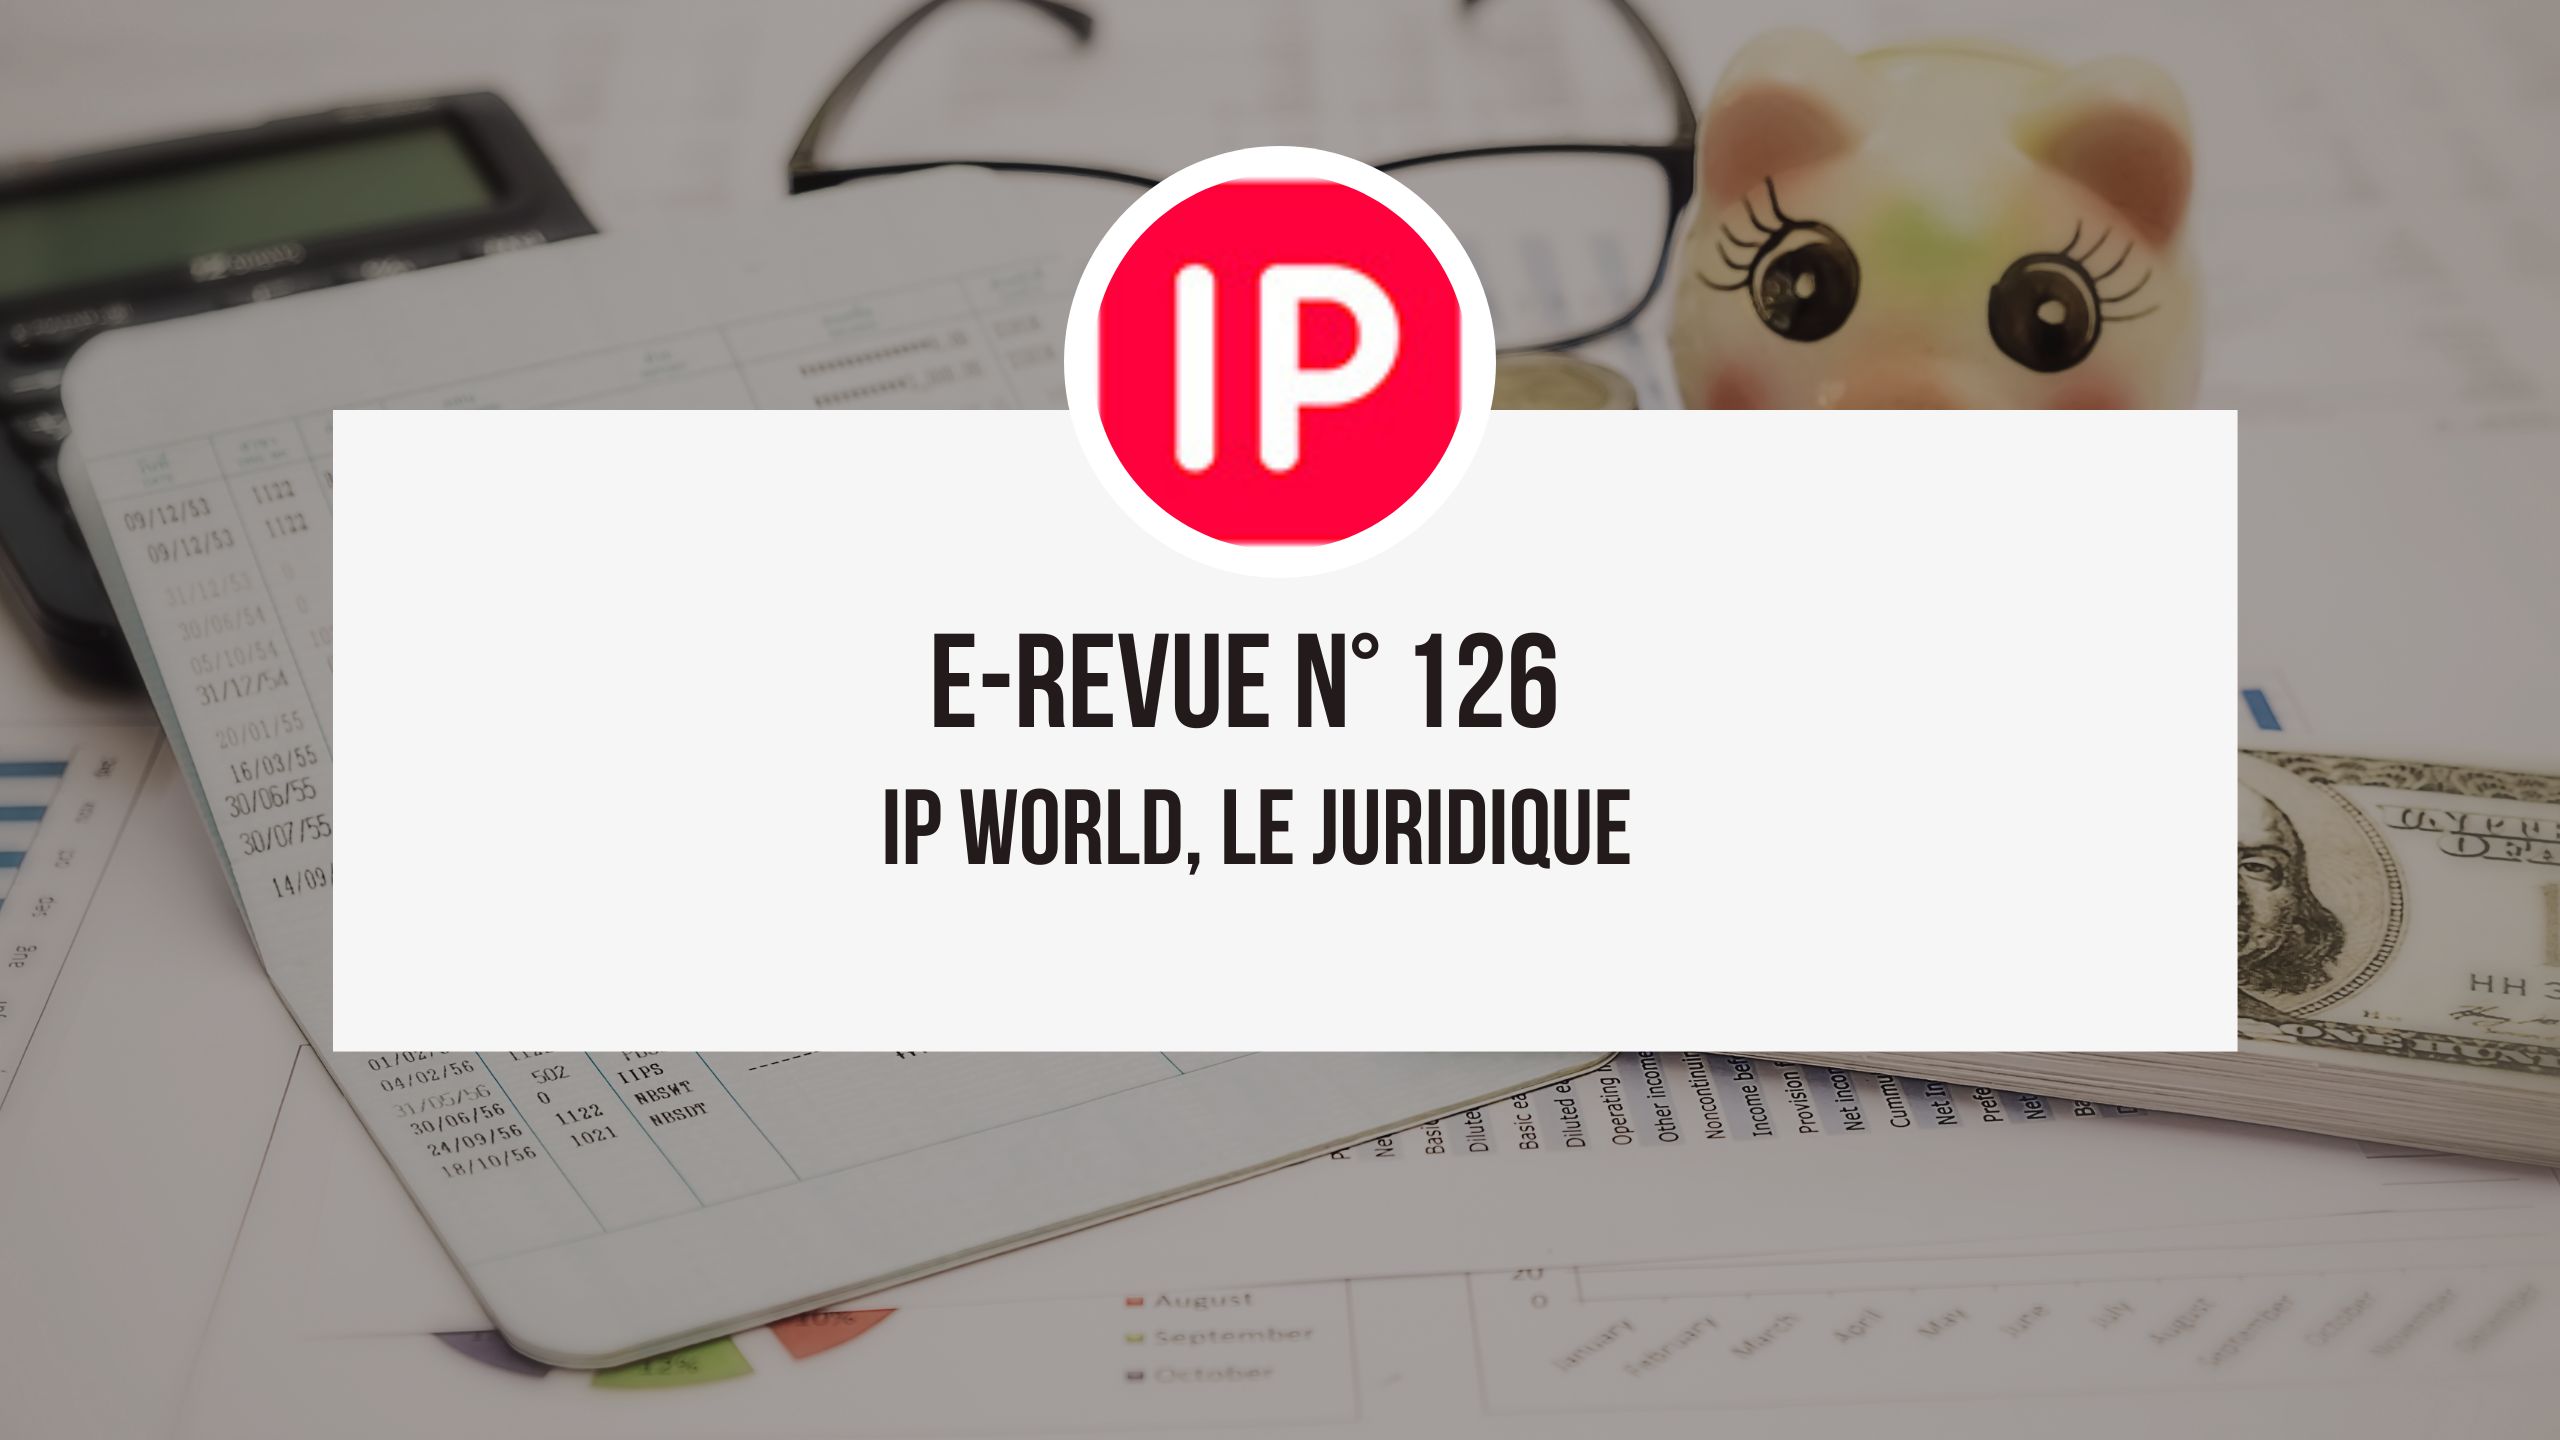 IP World 126